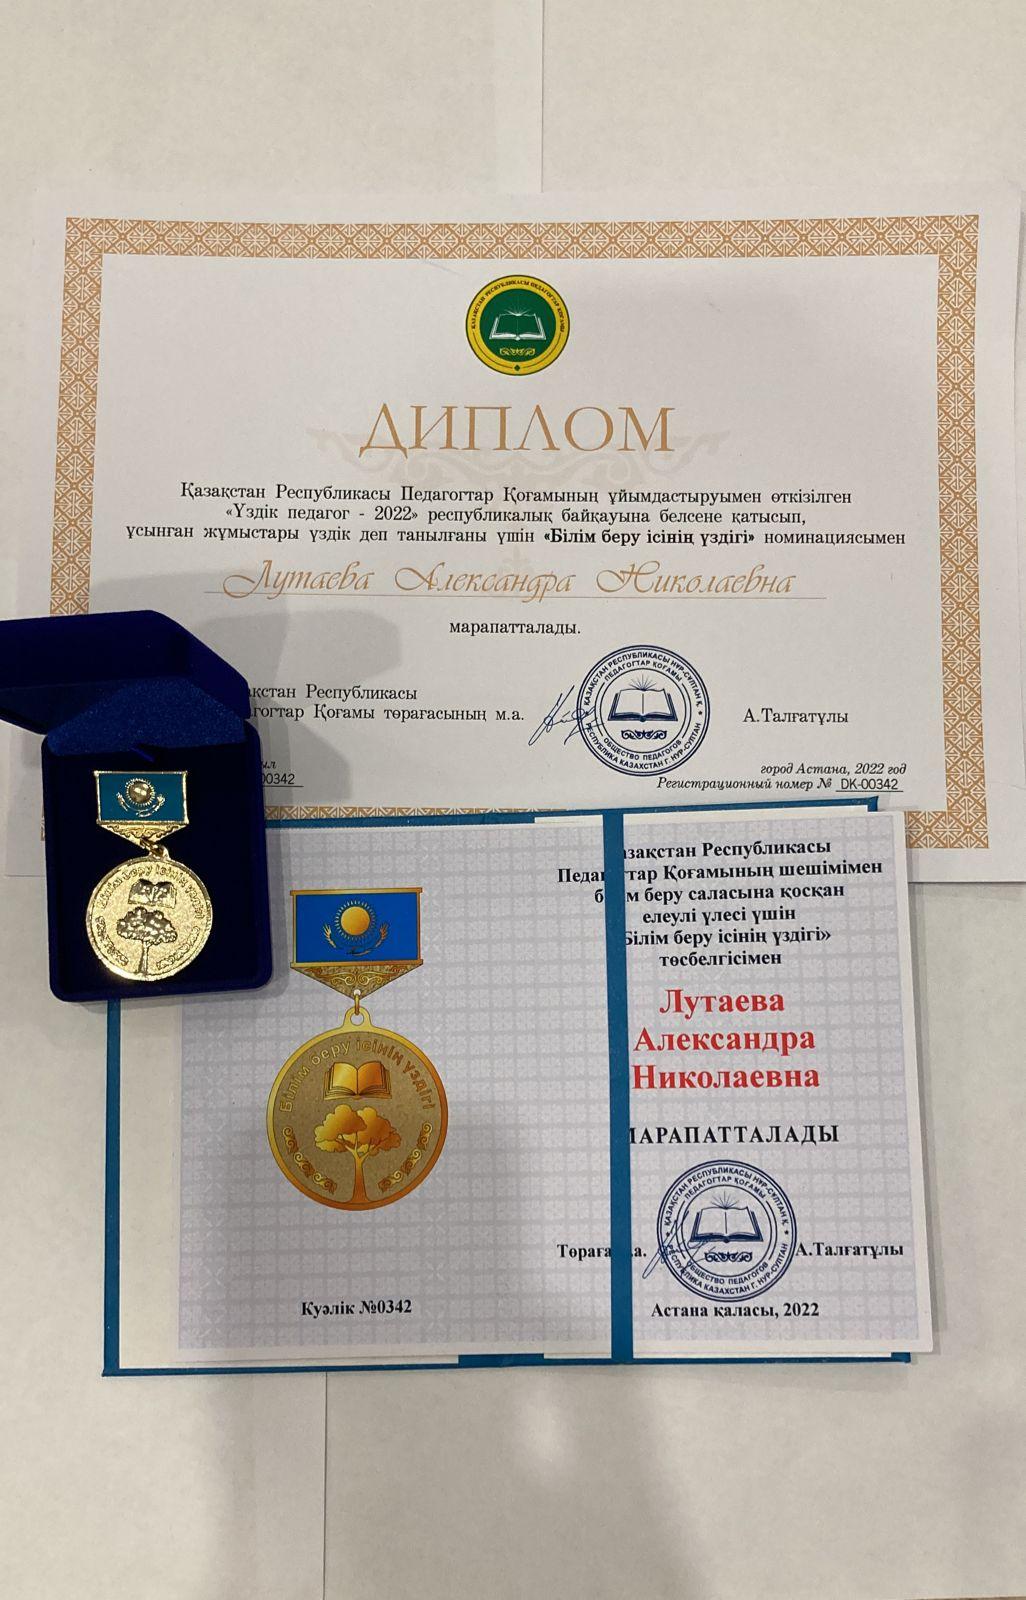 Поздравляем Александру Николаевну с заслуженной наградой!💐💐💐